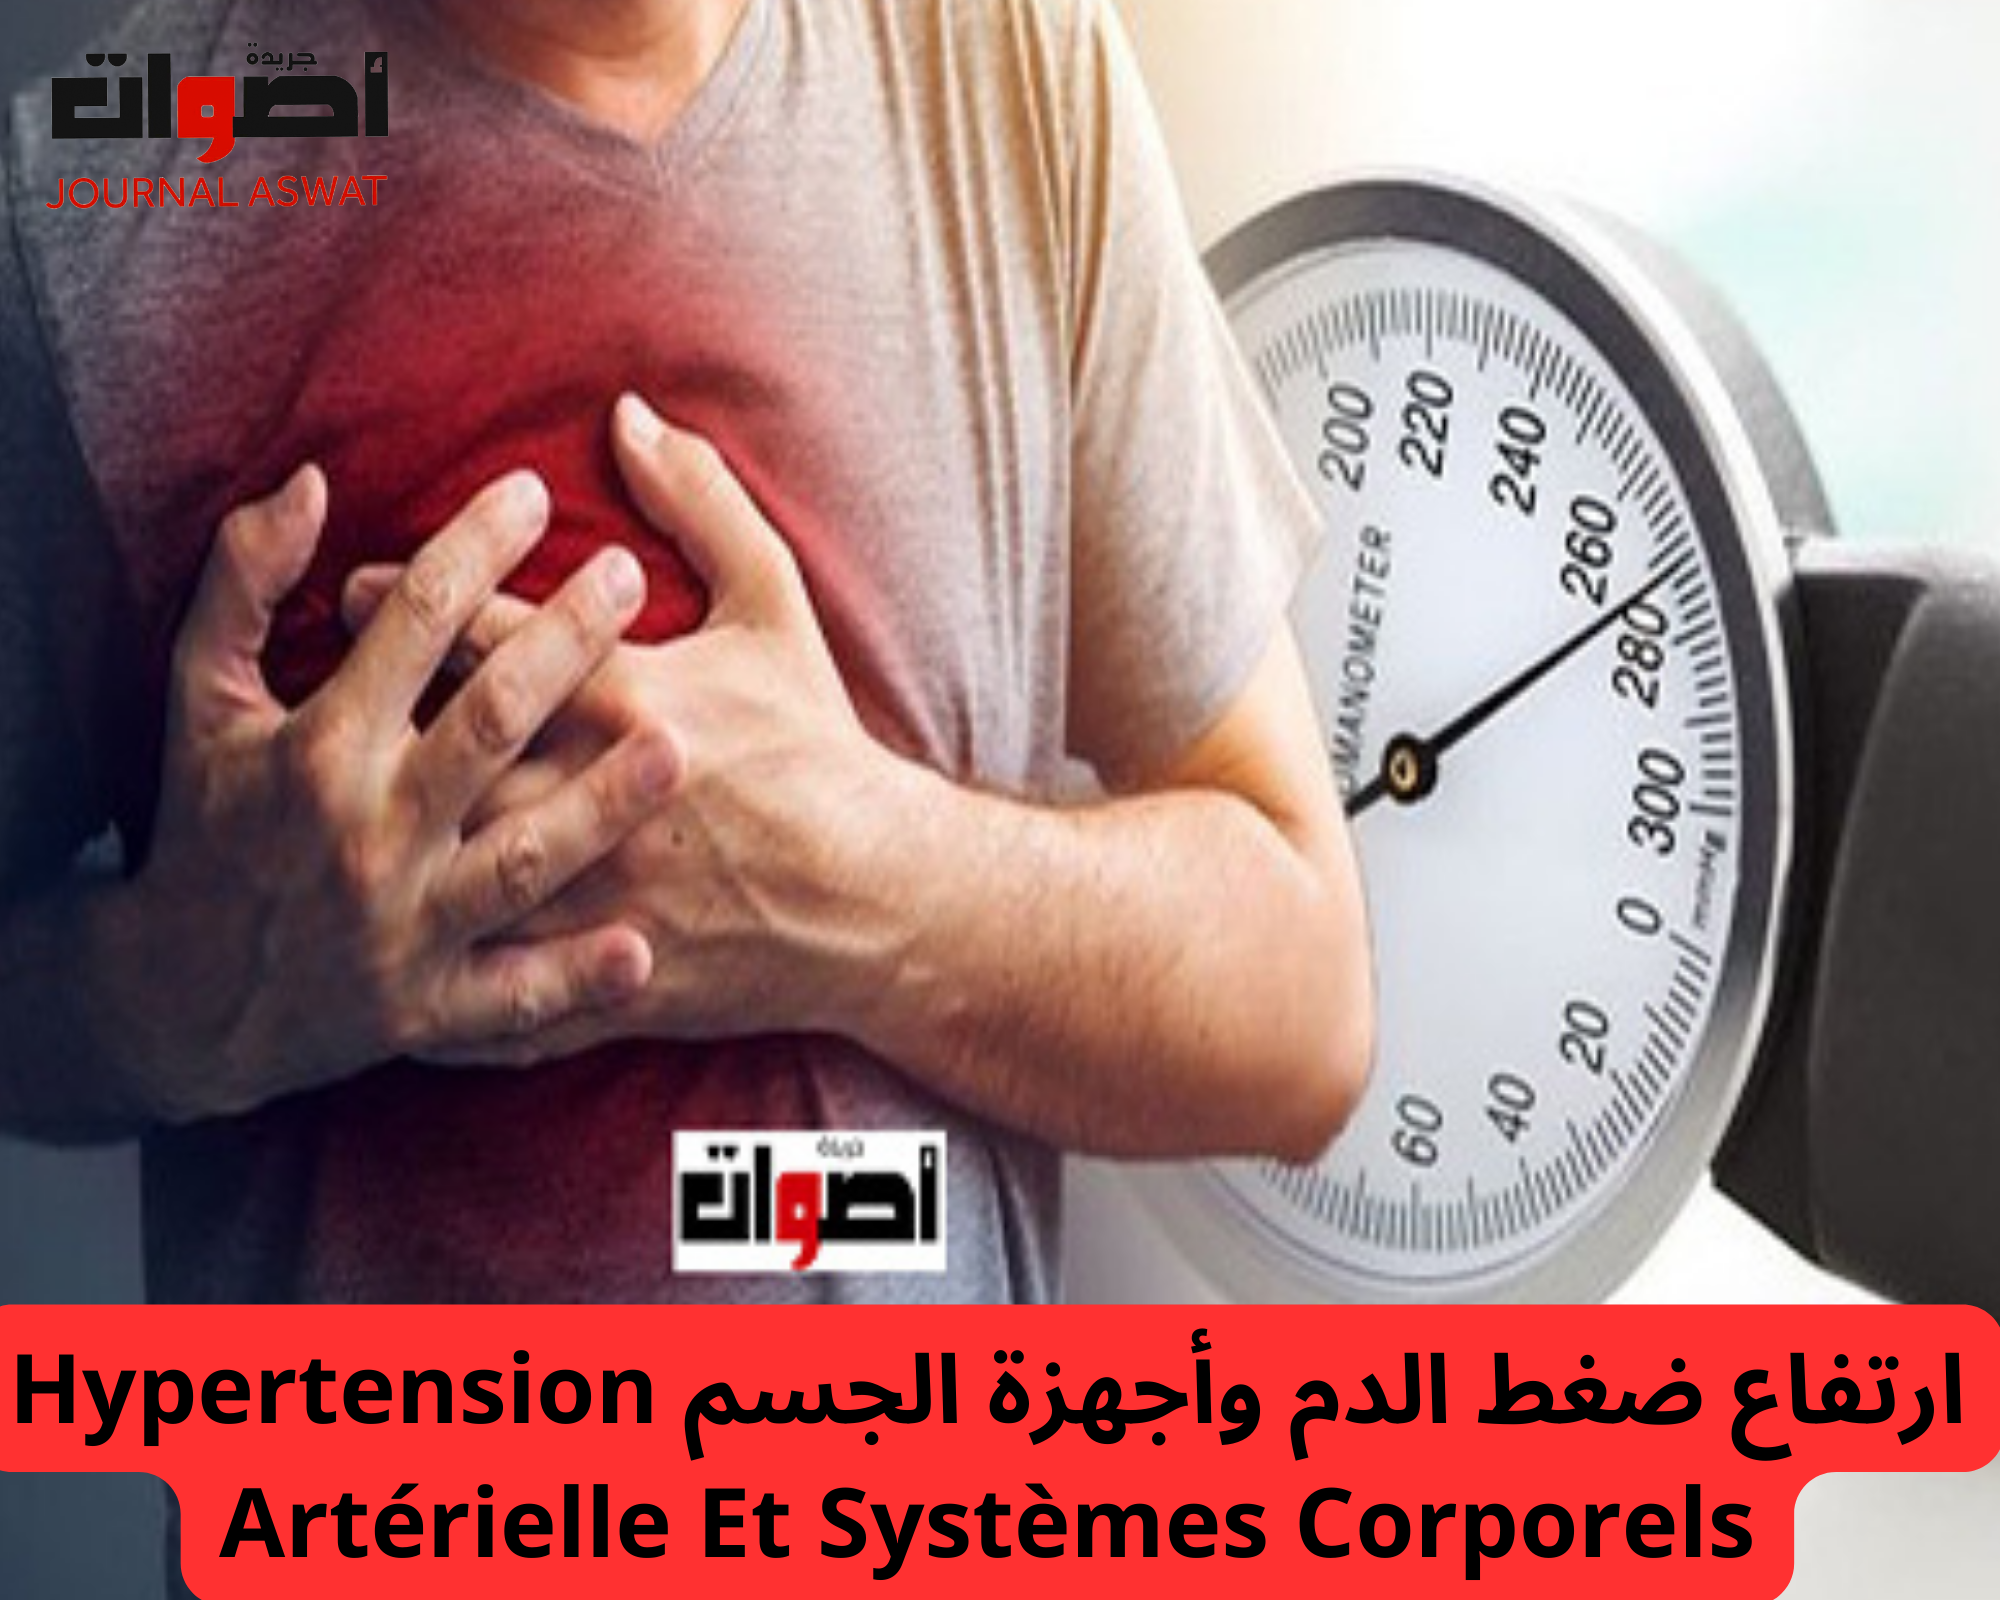 ارتفاع ضغط الدم وأجهزة الجسم Hypertension Artérielle Et Systèmes Corporels (1)